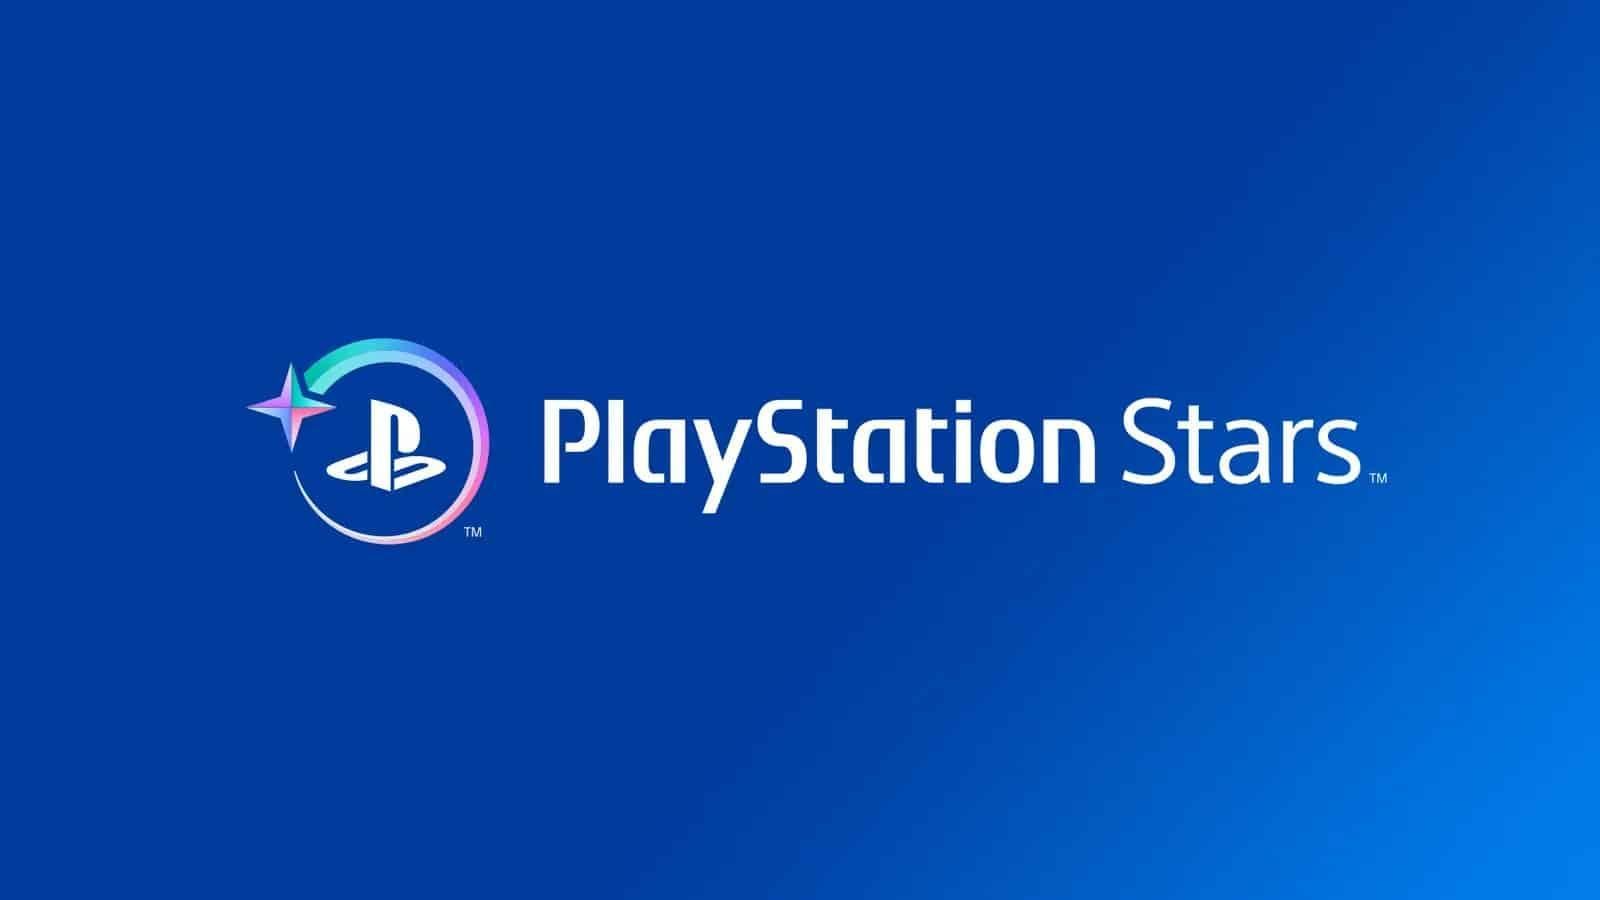 PlayStation révèle son nouveau programme de fidélité : PlayStation Stars